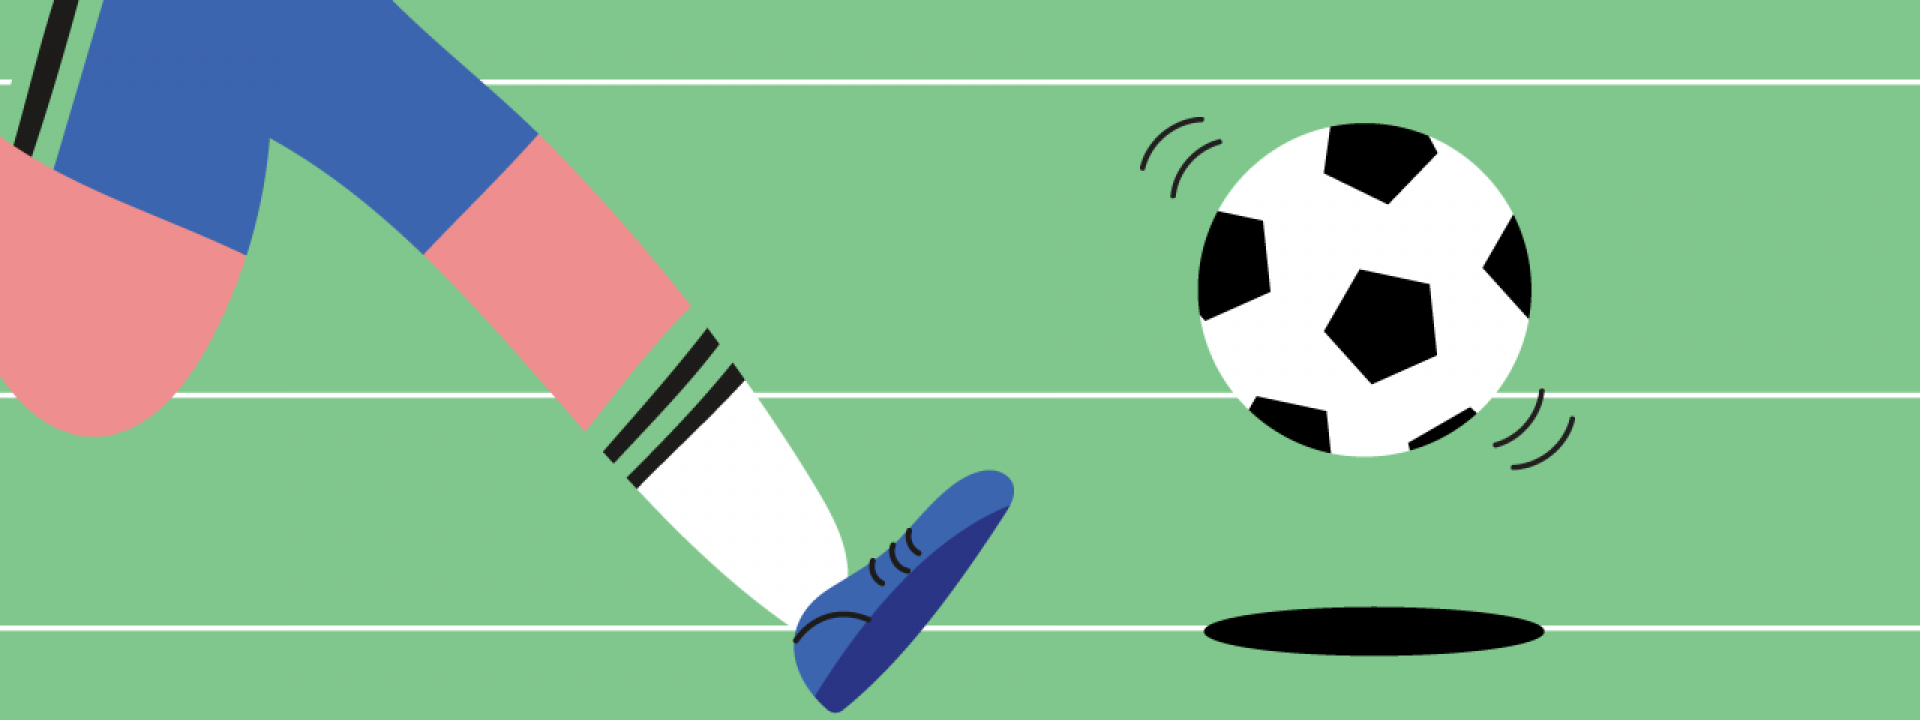 Μέρες ποδοσφαίρου: Συζήτηση | Αθλητισμός: Παιδί και Ποδόσφαιρο - Εικόνα